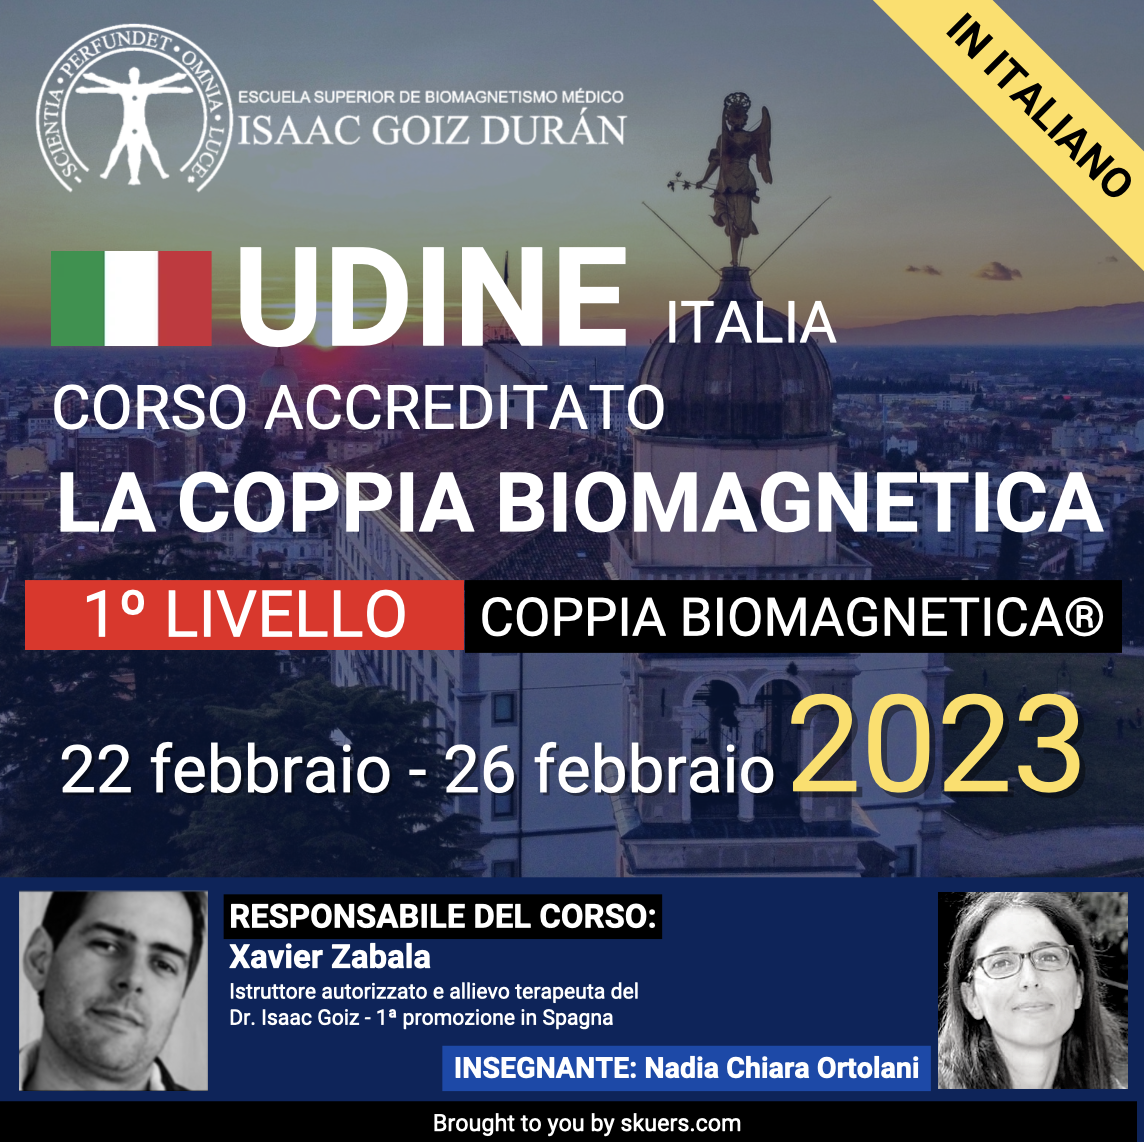 Corso di formazione ufficiale Biomagnetismo 1° livello febbraio 2023, Responsabile del corso Xabier Zabala Martinez, insegnante Nadia Chiara Ortolani.